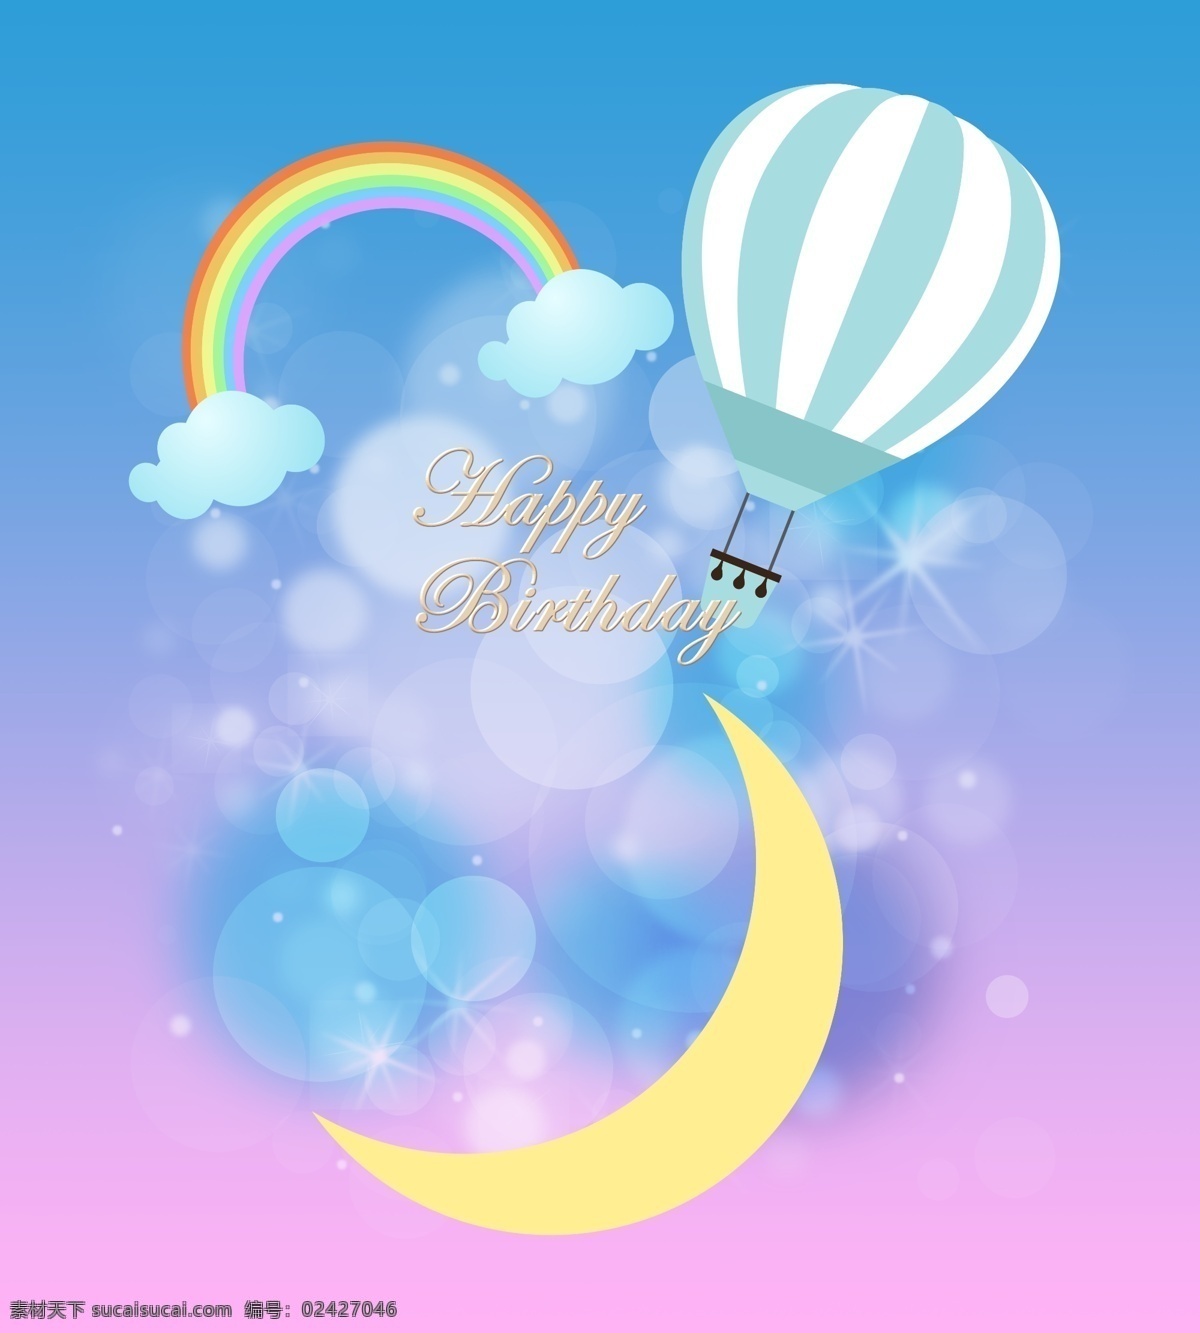 星星 月亮 热气球 宝宝 宴 宝宝宴会 蓝紫色 云朵 生日快乐 背景 效果图 方案 照片